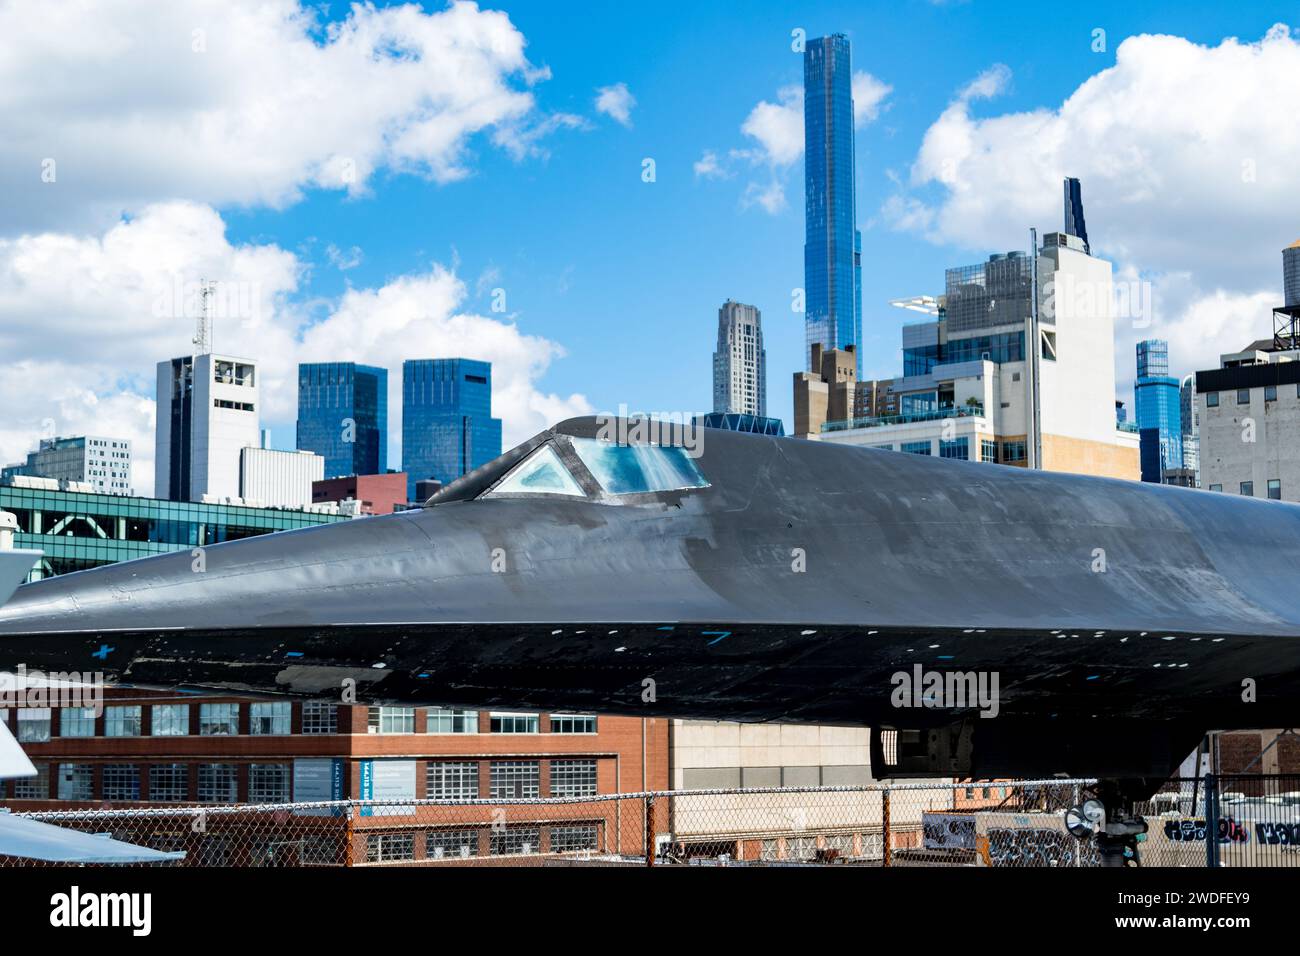 Ein Lockheed A-12 Spionageflugzeug, das auf dem Flugdeck der USS Intrepid ausgestellt ist, ankert am Pier 86, Hells Kitchen, Manhattan, New York, mit der Skyline von New York Stockfoto